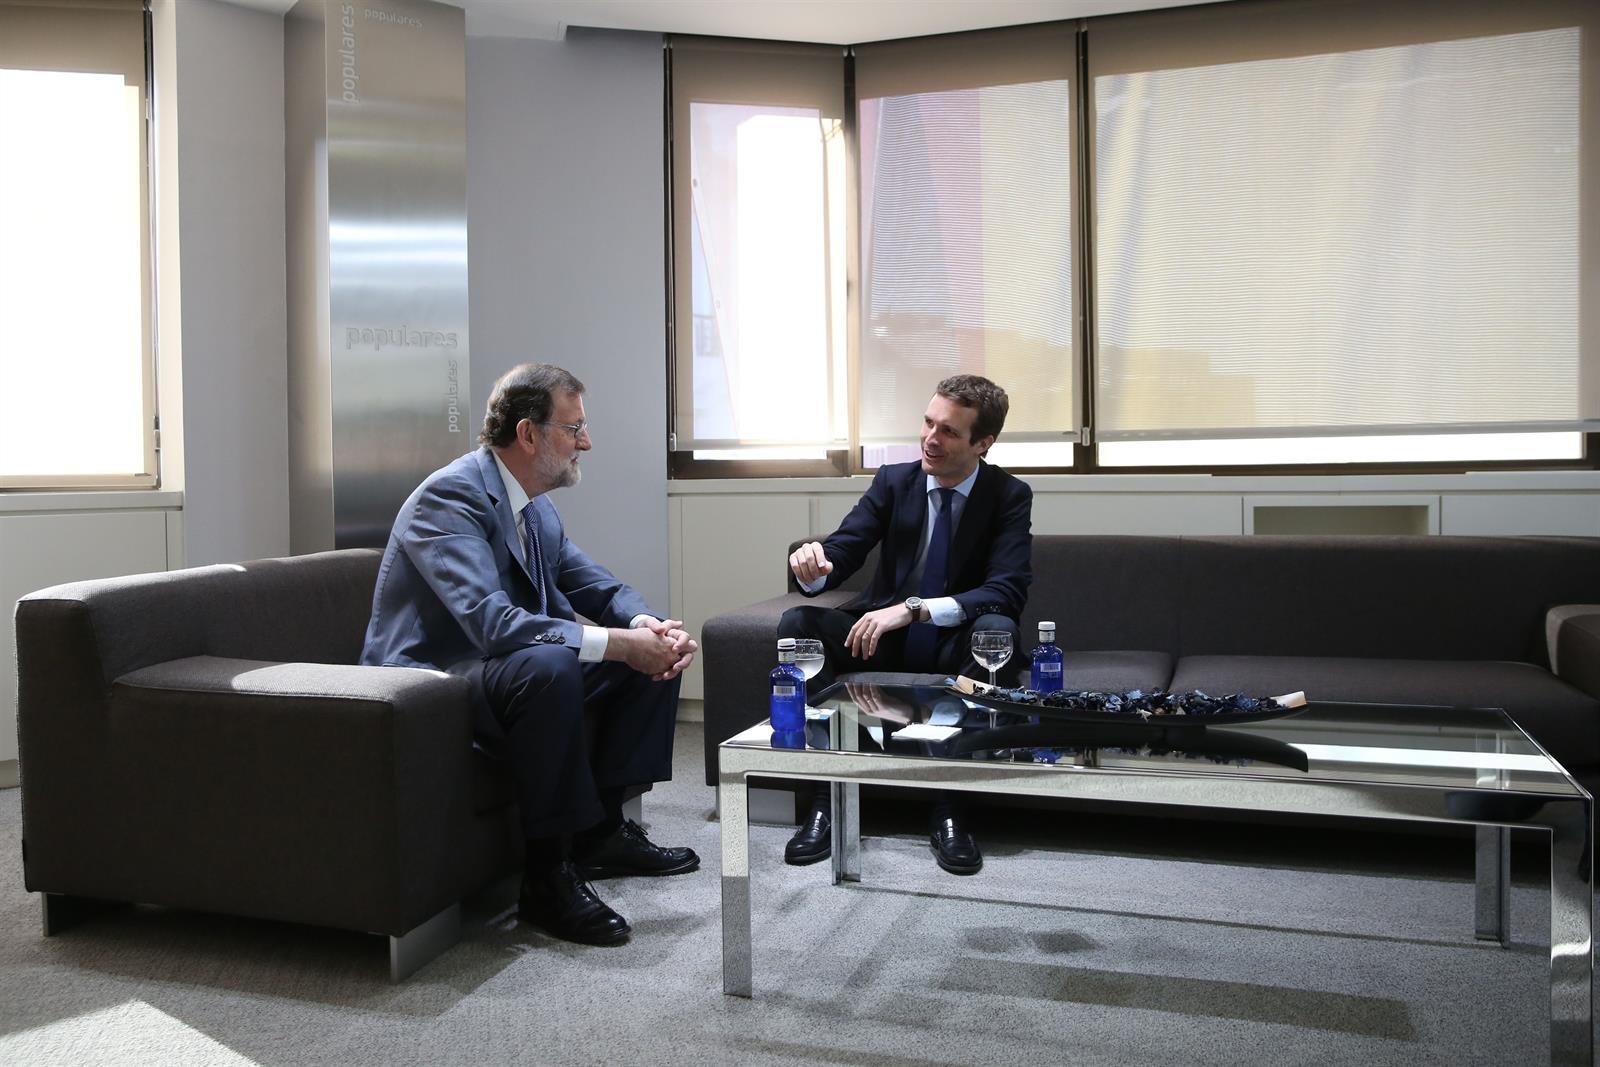 Mariano Rajoy y Pablo Casado en una imagen de archivo. Fuente: Europa Press.